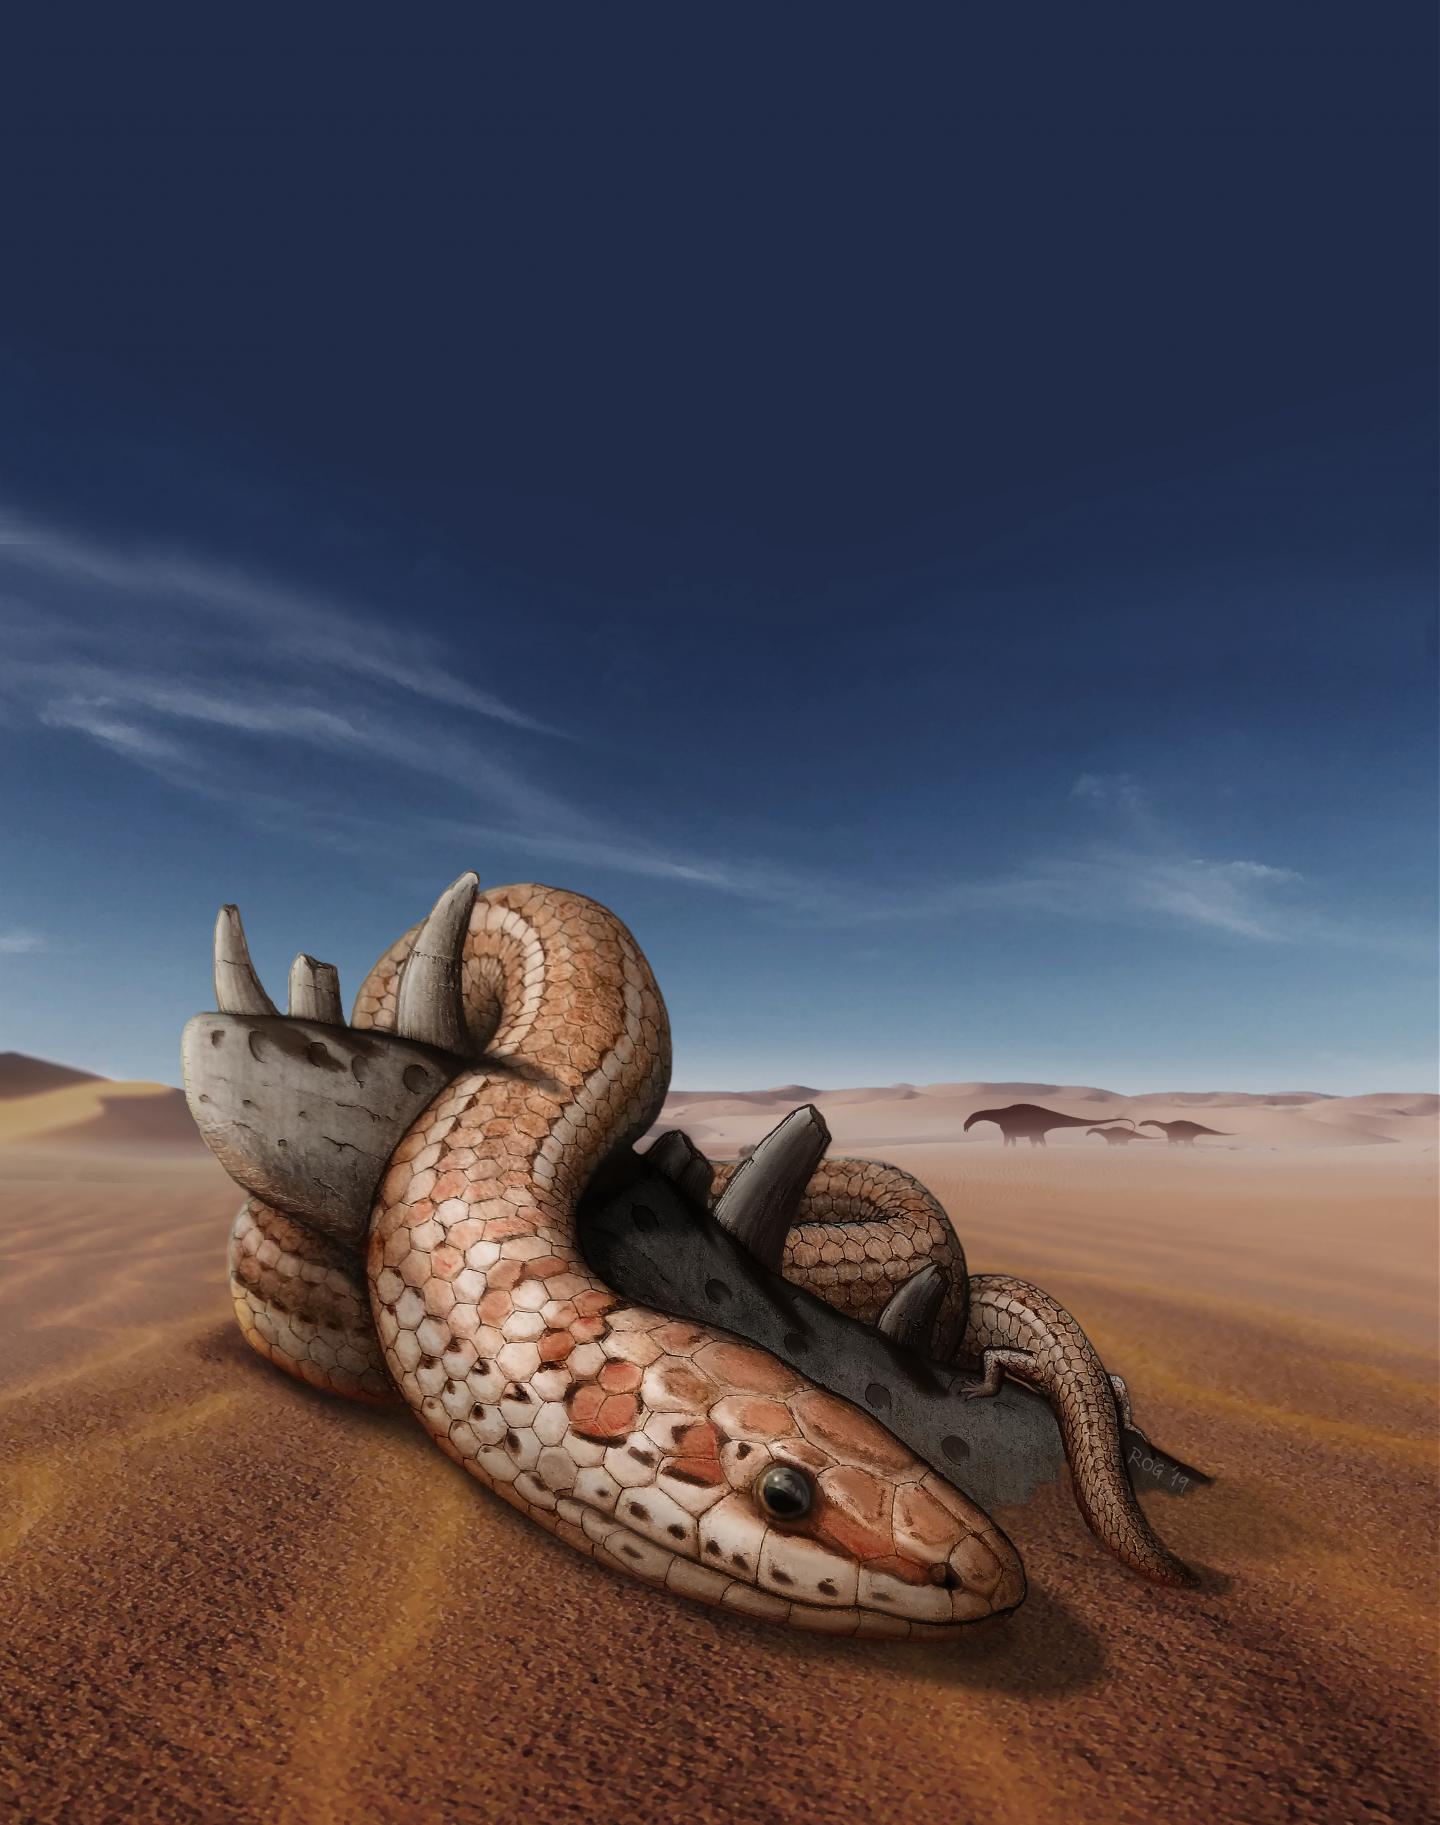 Ancient snake fossil sheds light on evolution of modern snake skulls